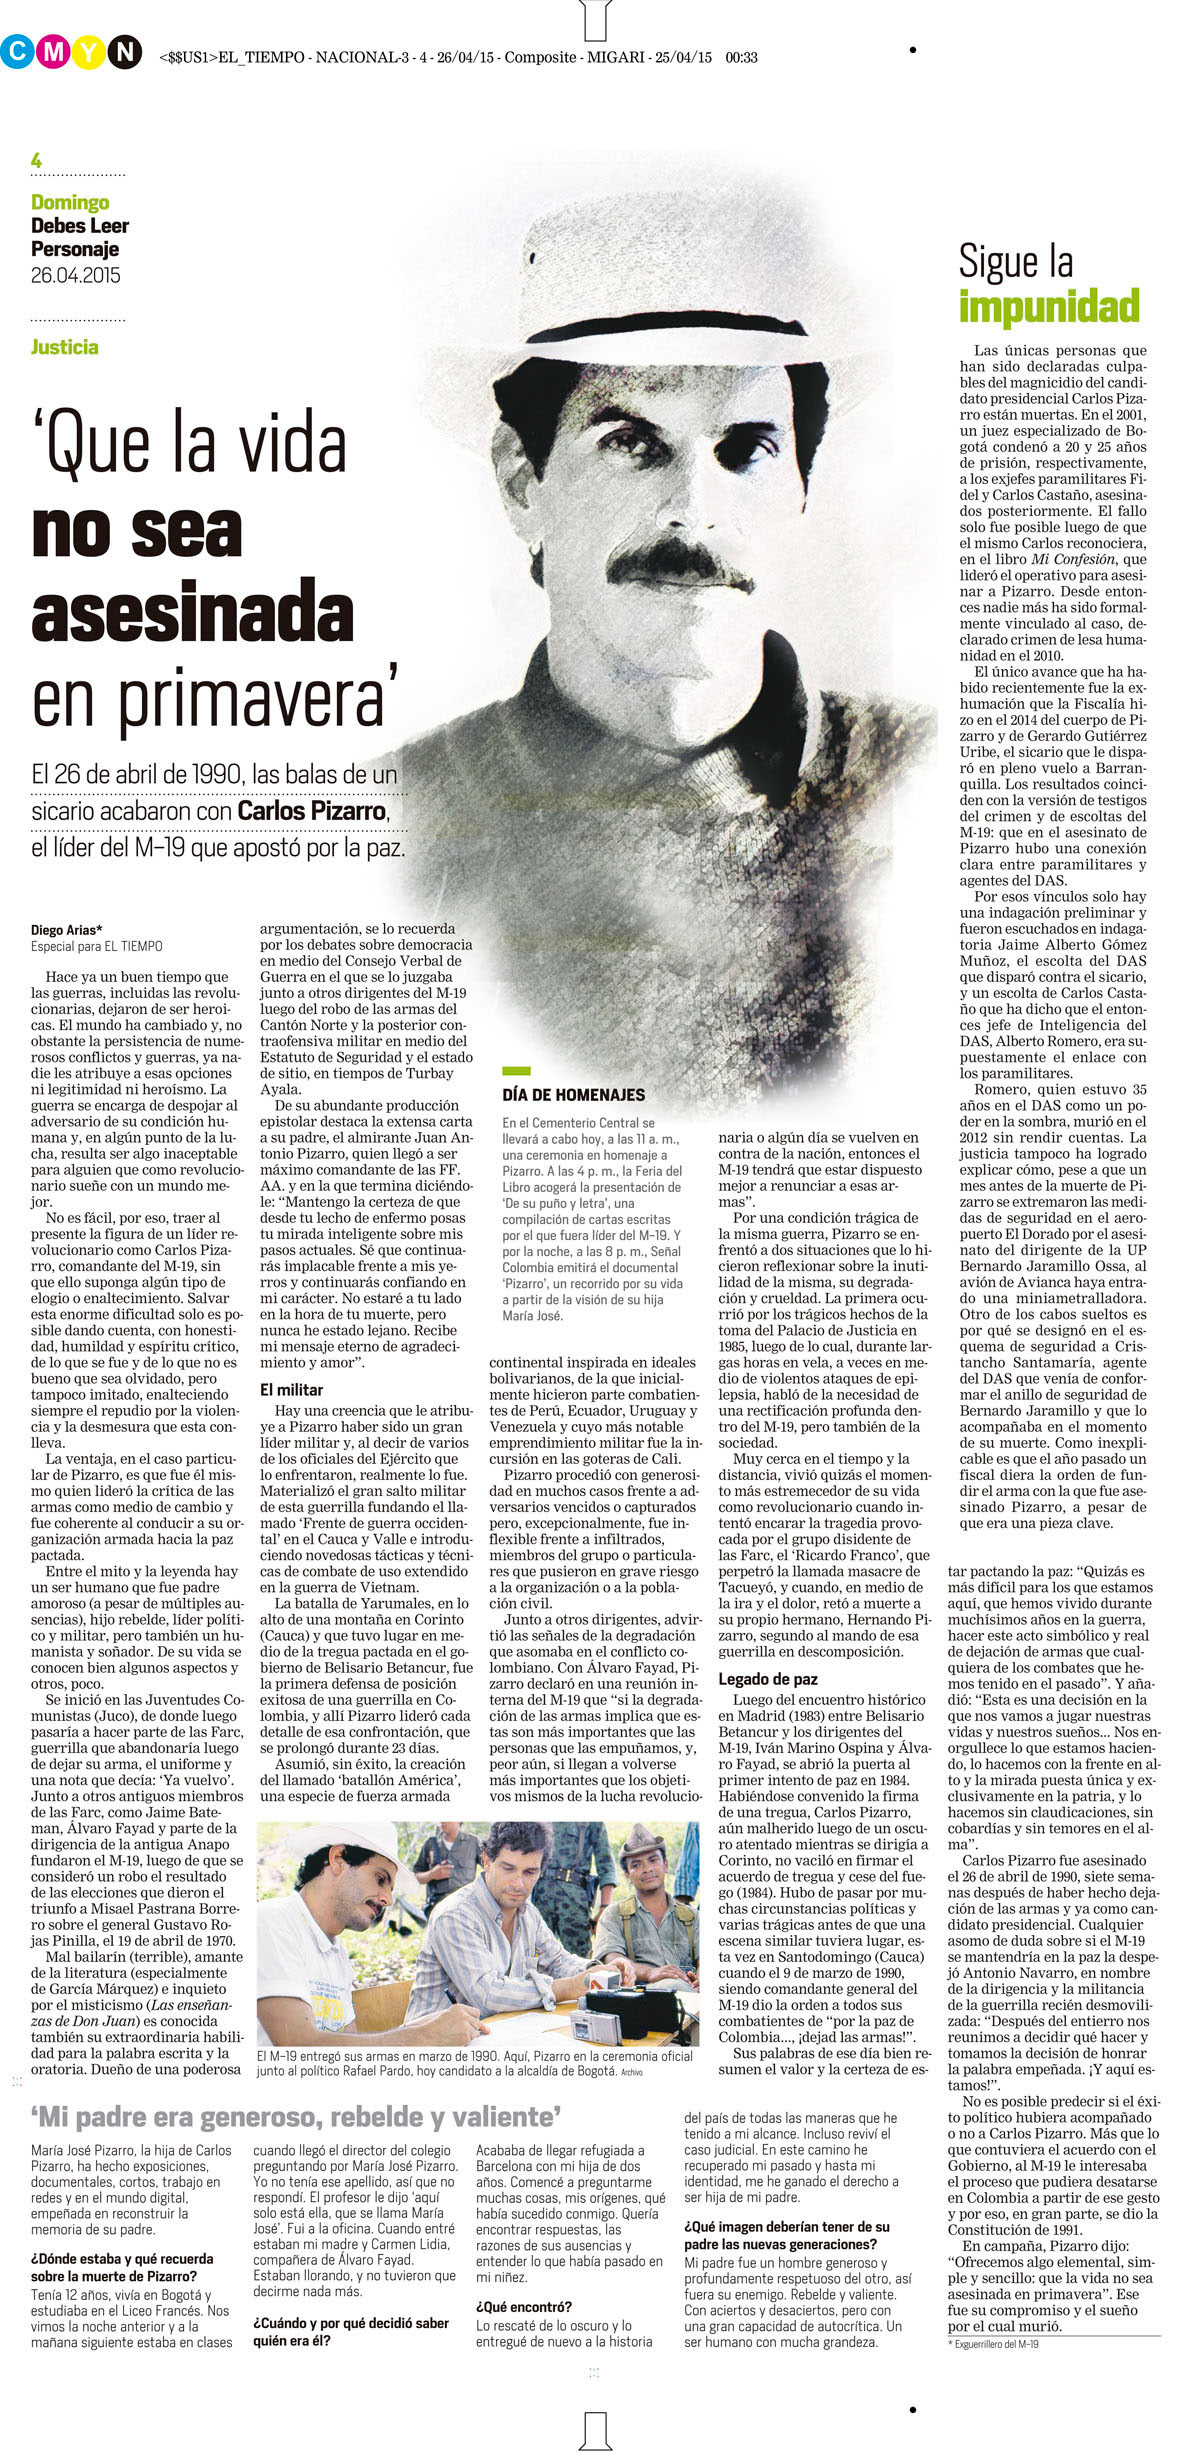 哥伦比亚EL TIEMPO报纸版式设计欣赏